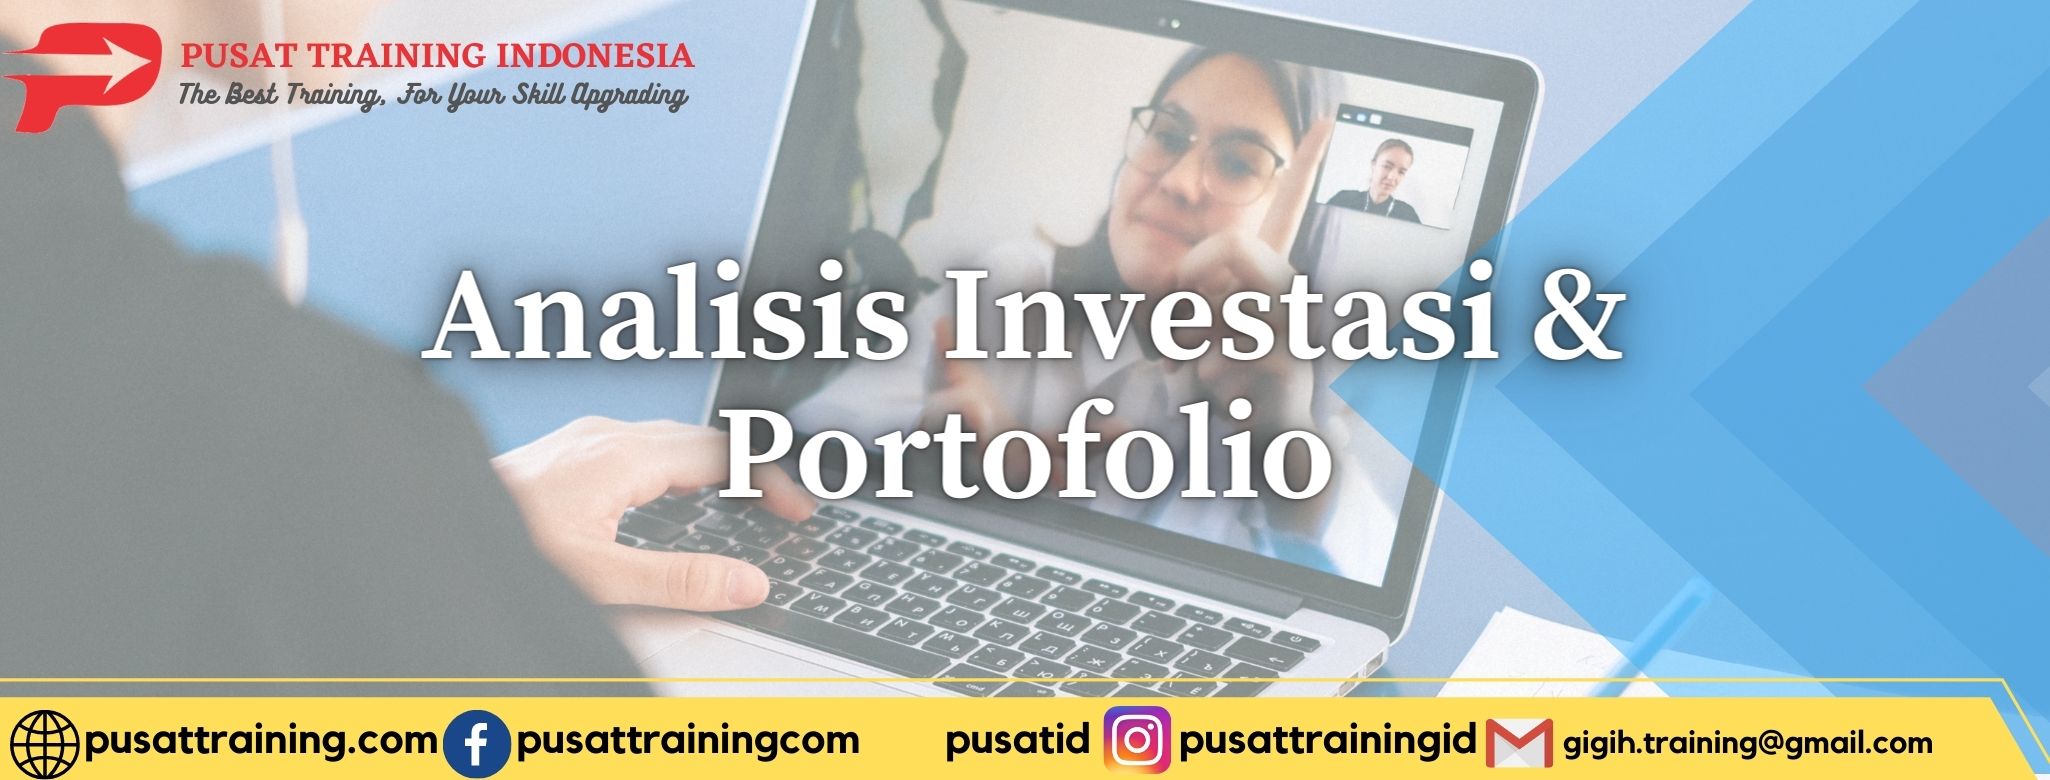 Analisis-Investasi-Portofolio